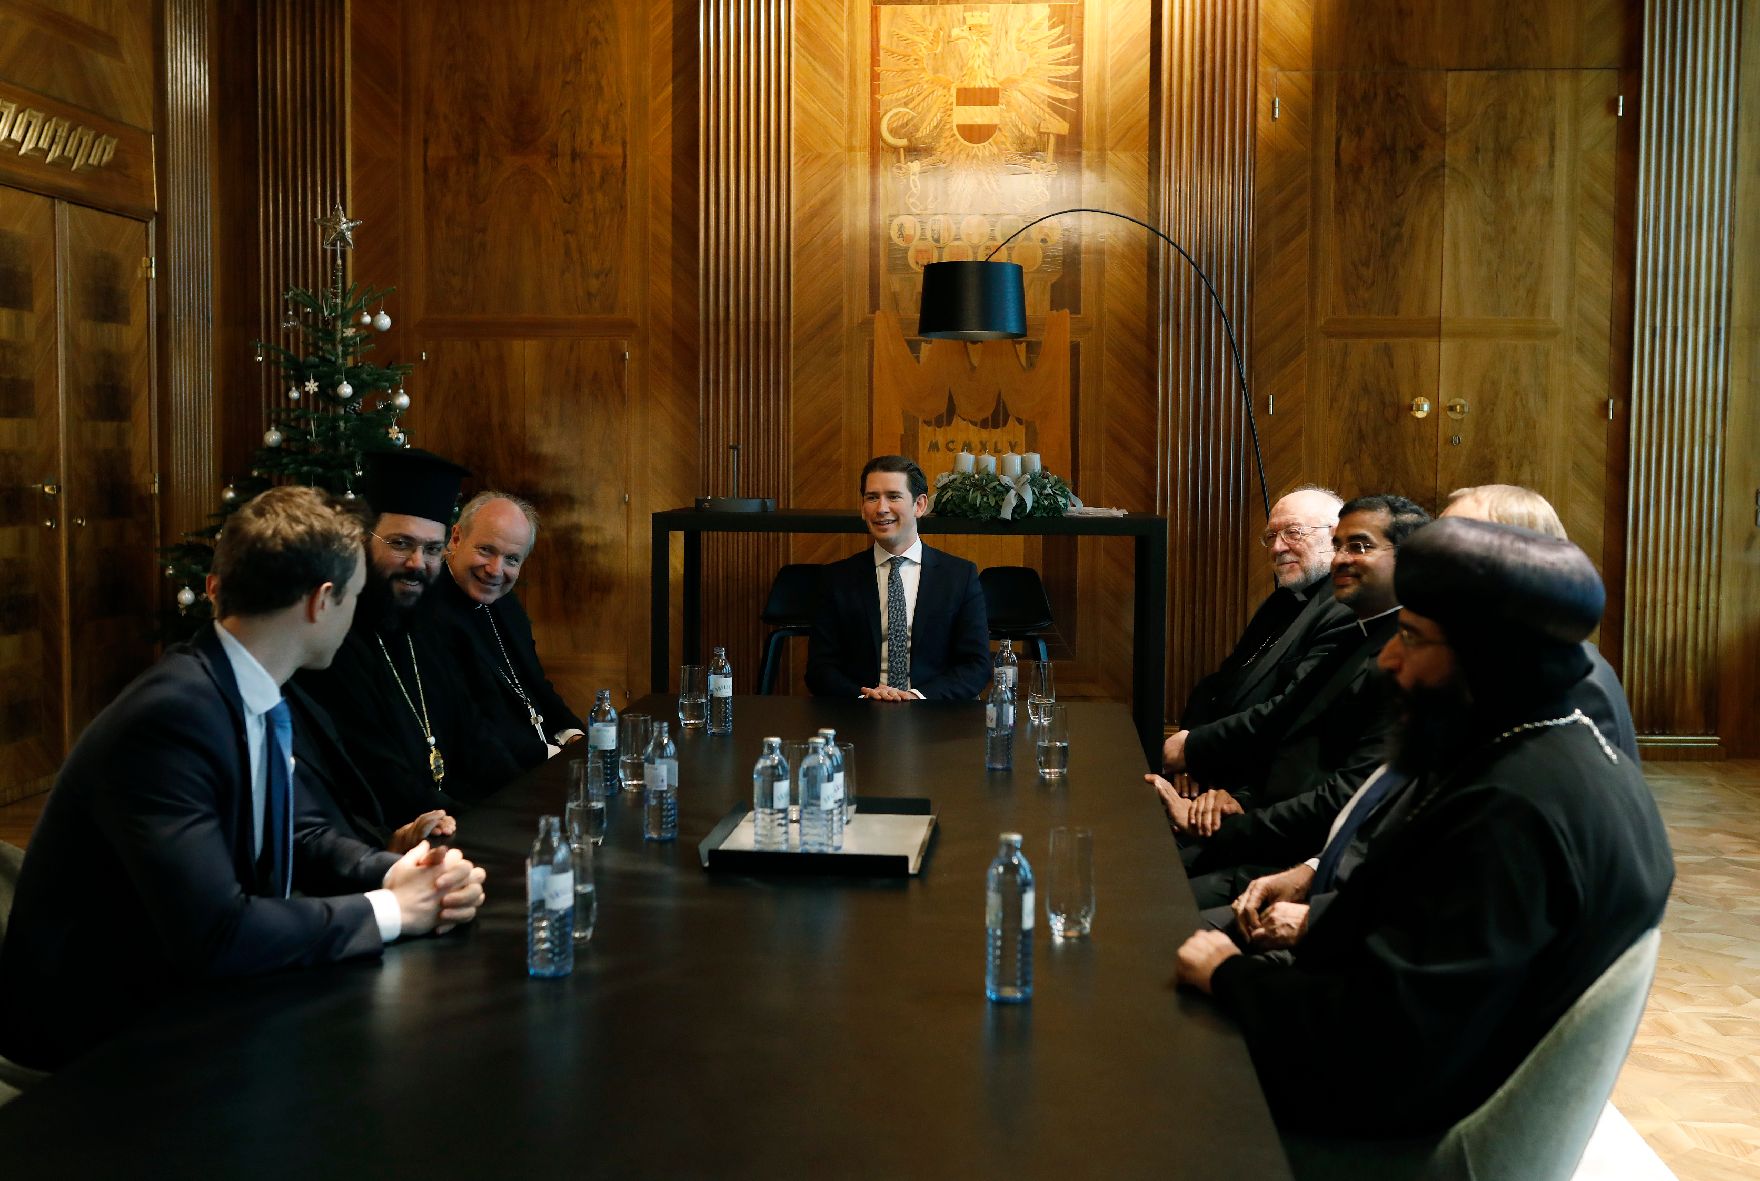 Am 4. Dezember 2018 empfingen Bundeskanzler Sebastian Kurz (m.) und Bundesminister Gernot Blümel (l.) Vertreter christlicher Religionen im Bundeskanzleramt.